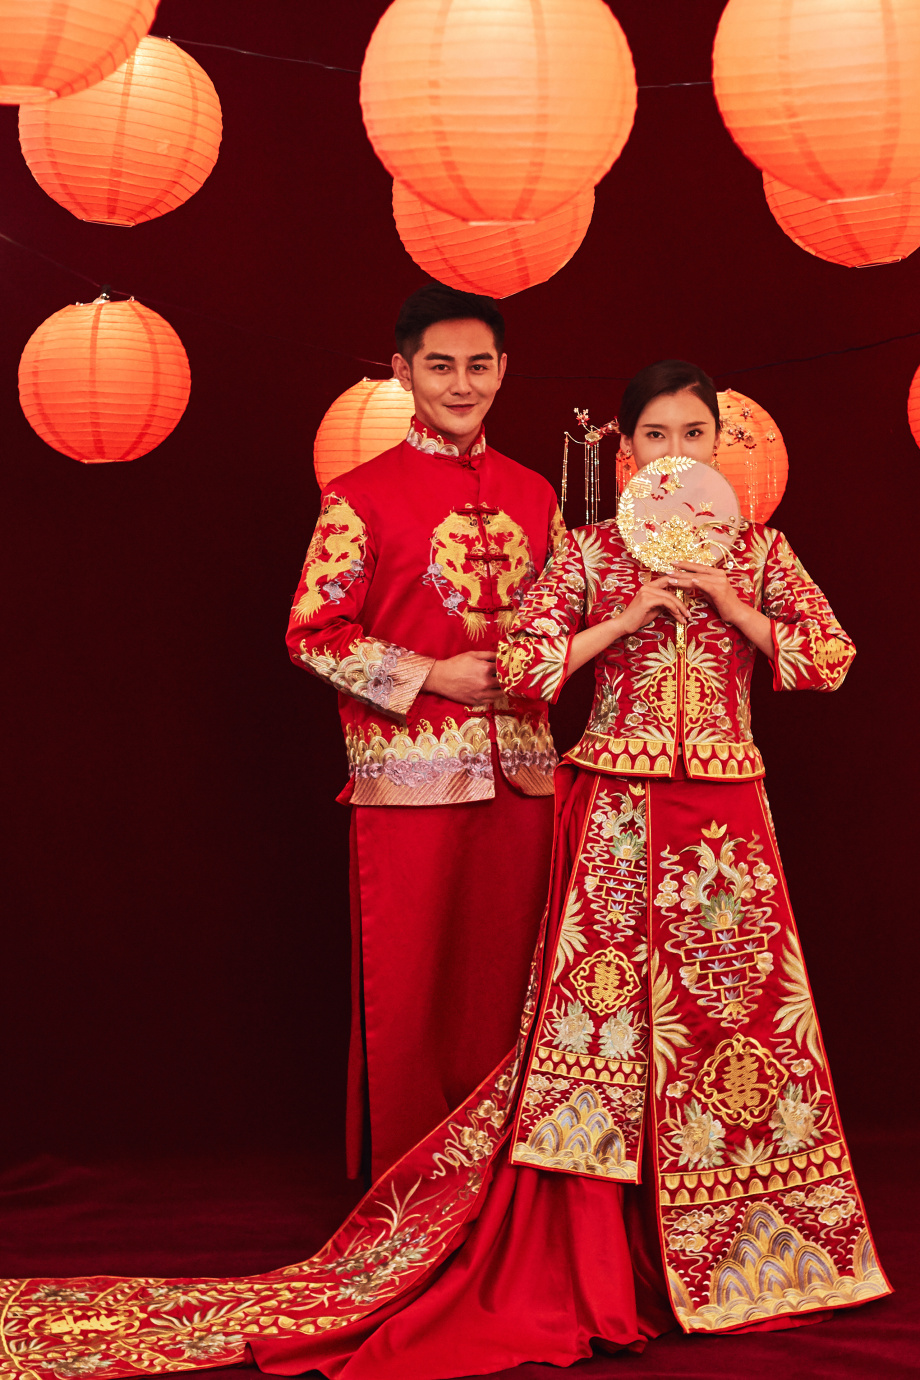 Phong cách cưới Trung Quốc mang đậm bản sắc dân tộc và sự tinh tế trong thiết kế. Nếu bạn đang tìm kiếm ý tưởng cho lễ cưới của mình, hãy xem các bức ảnh Chụp ảnh cưới phong cách Trung Quốc. Bạn sẽ được khám phá các trang phục truyền thống đặc sắc và những góc chụp độc đáo.